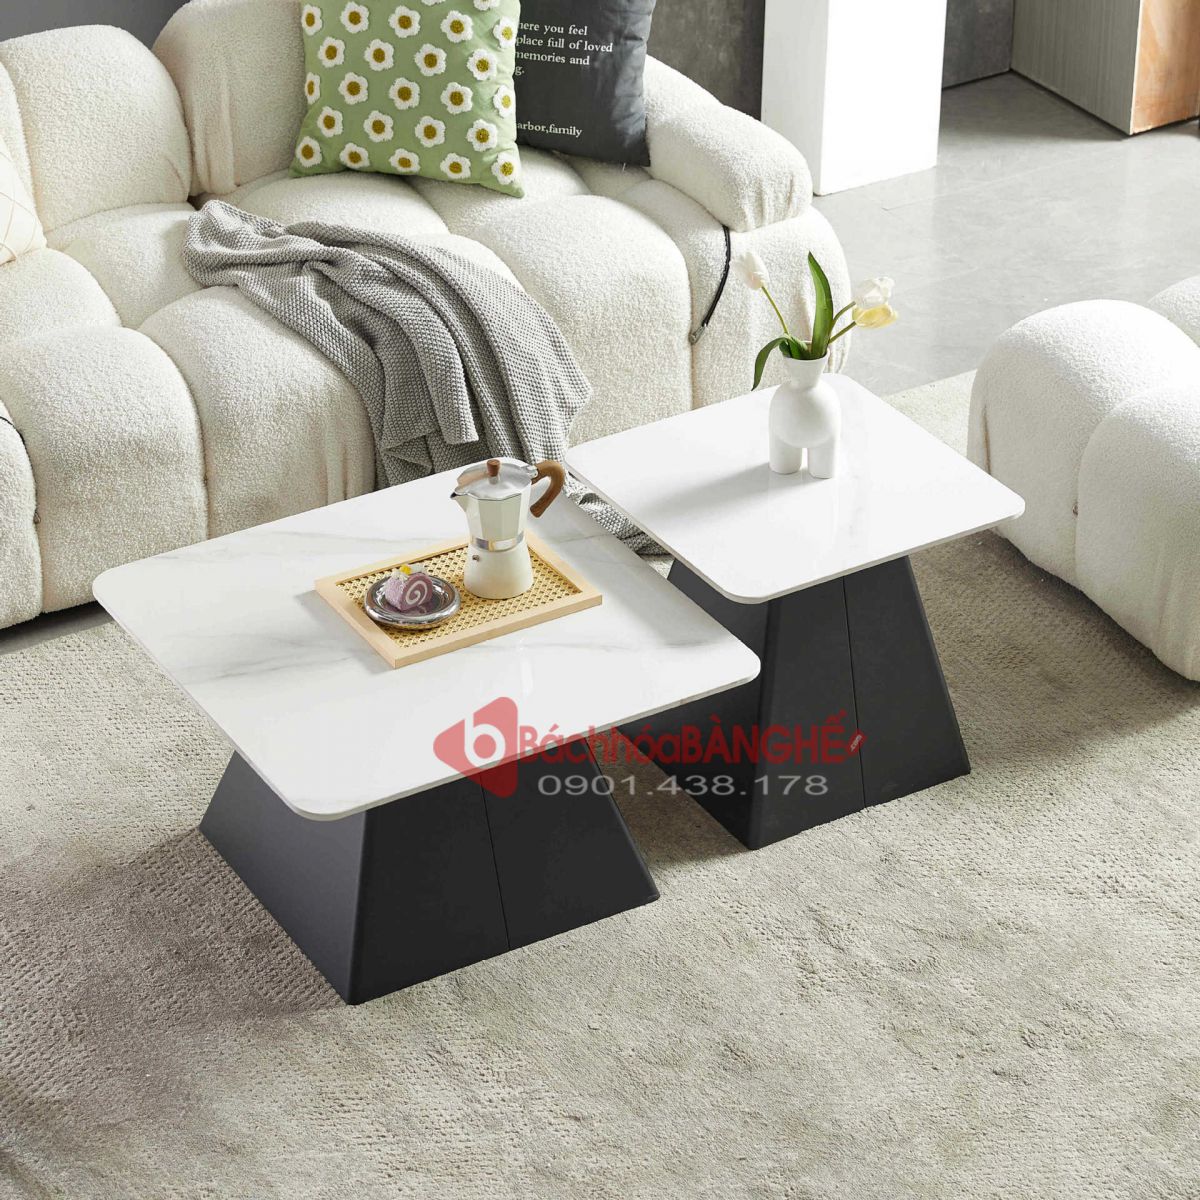 Bộ bàn đôi sofa mặt đá ceramic vuông 70 và 50 màu trắng hiện đại cho căn hộ, nhà phố, cửa hàng, văn phòng